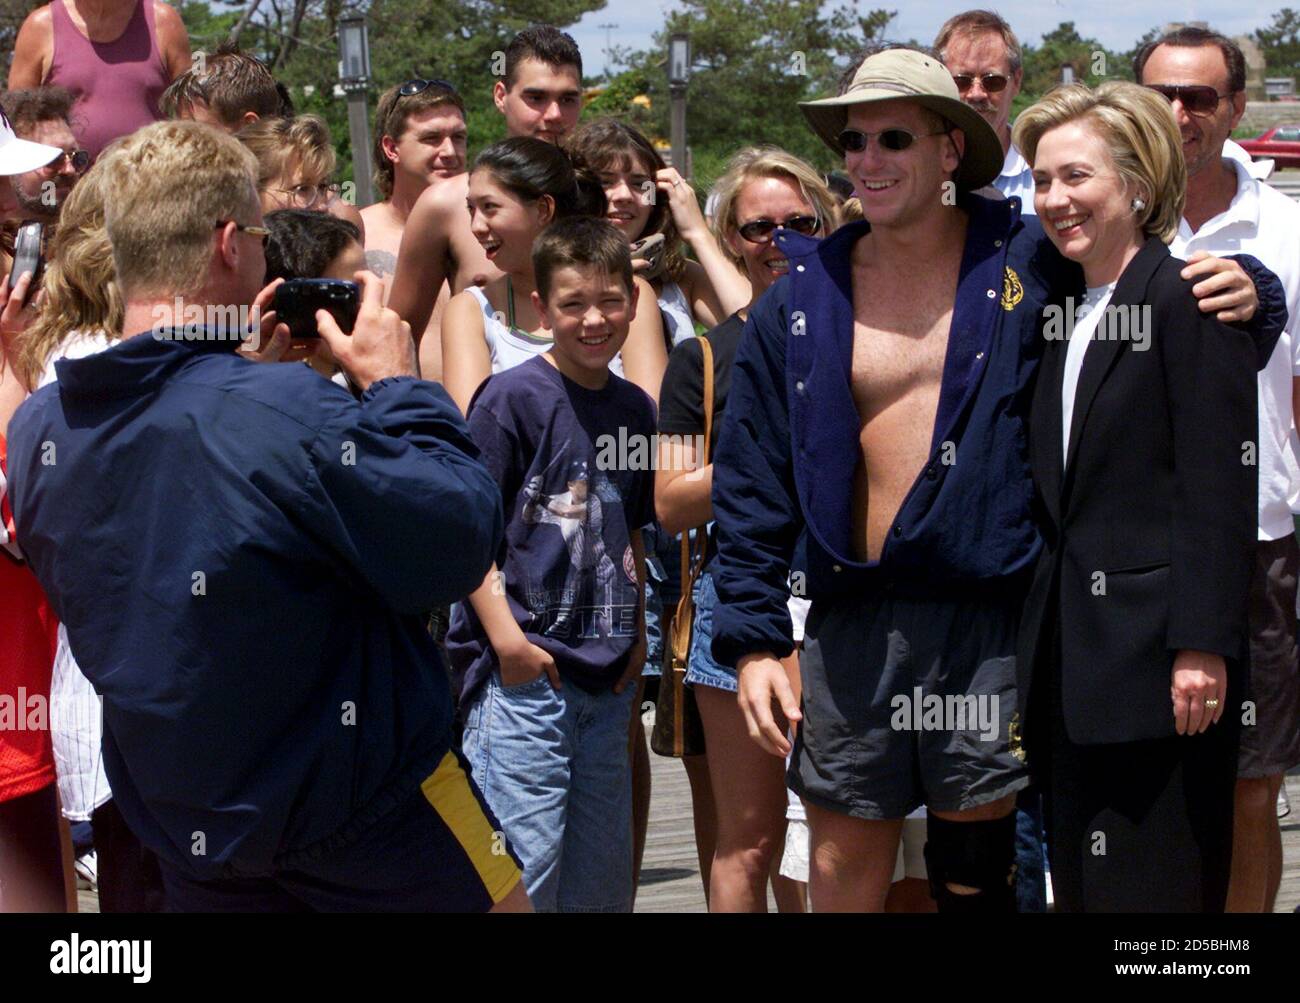 La première dame Hillary Rodham Clinton (R) pose pour une photo avec le  maître nageur A.J. Hepworth, le maître-nageur Chris Zang, photographie lors  de la visite de Clinton à Jones Beach, sur